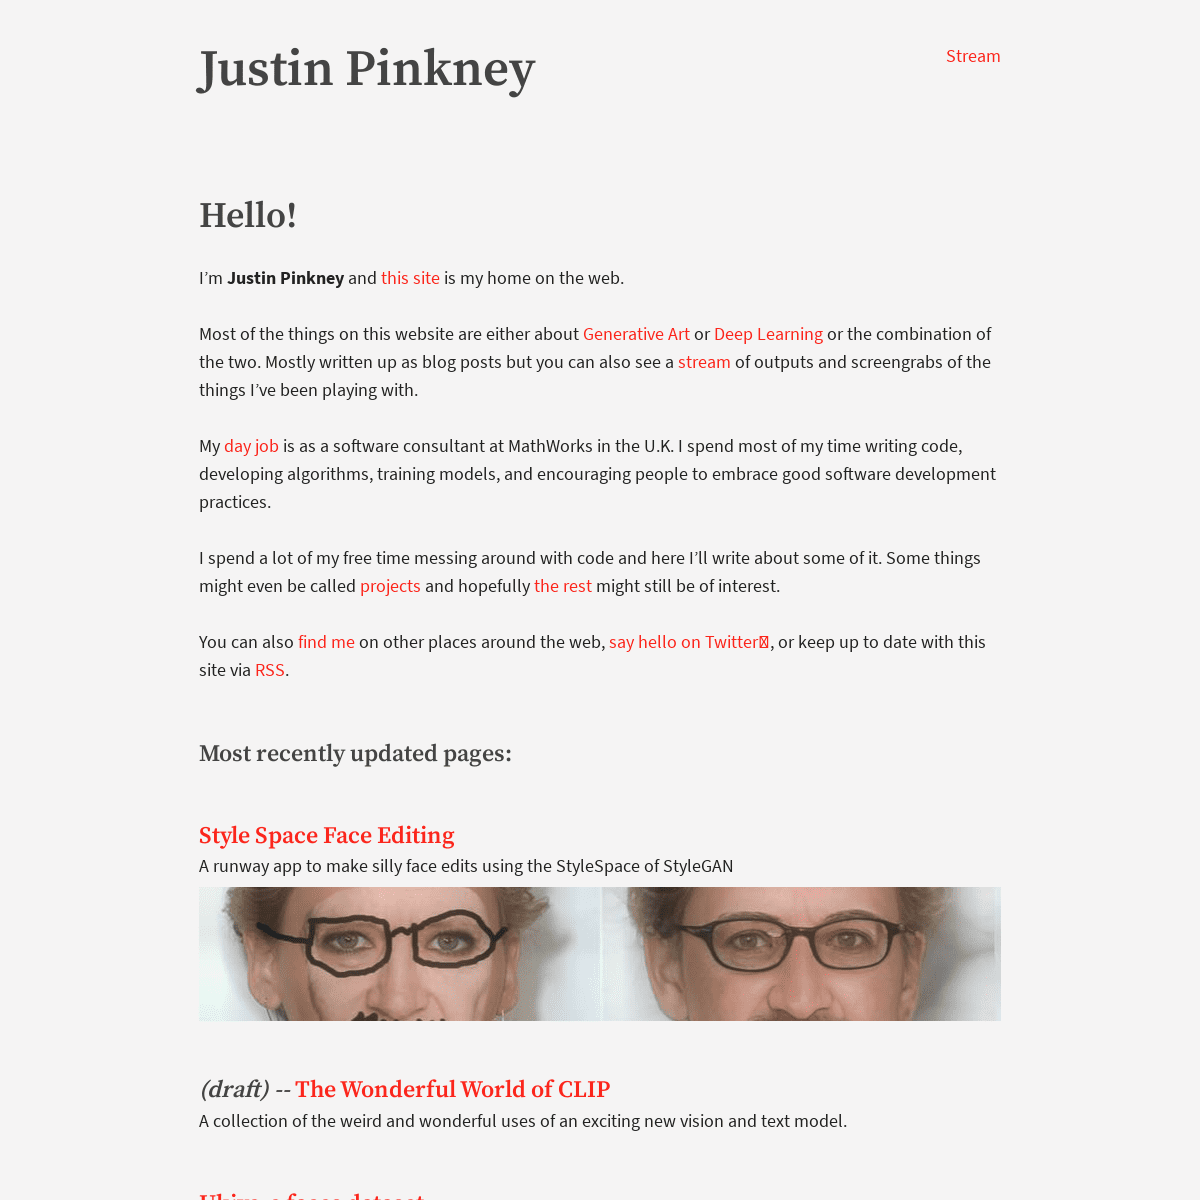 A complete backup of https://justinpinkney.com